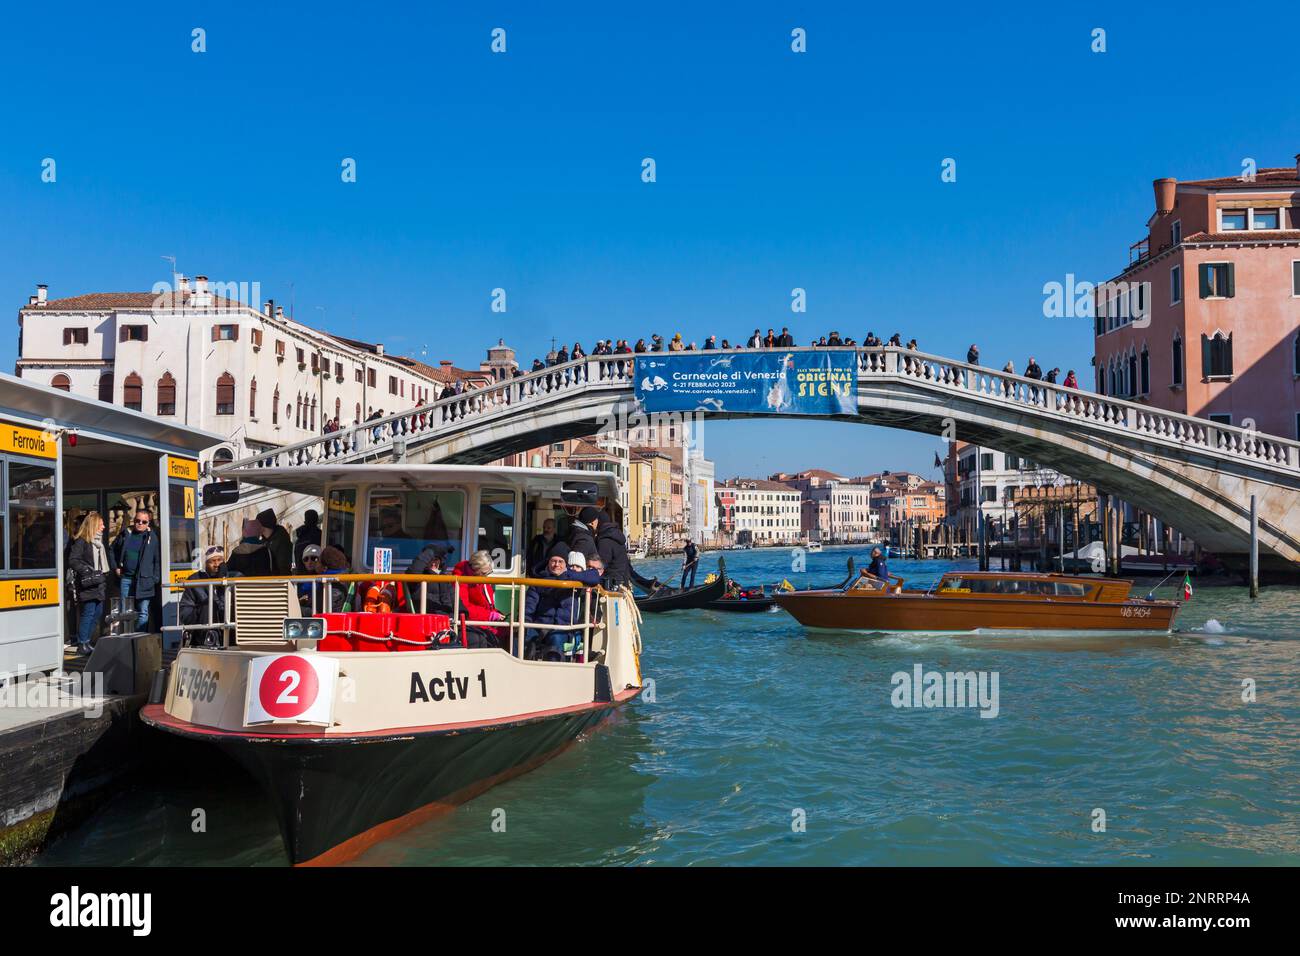 Bridge at Venice, Italy in February Stock Photo